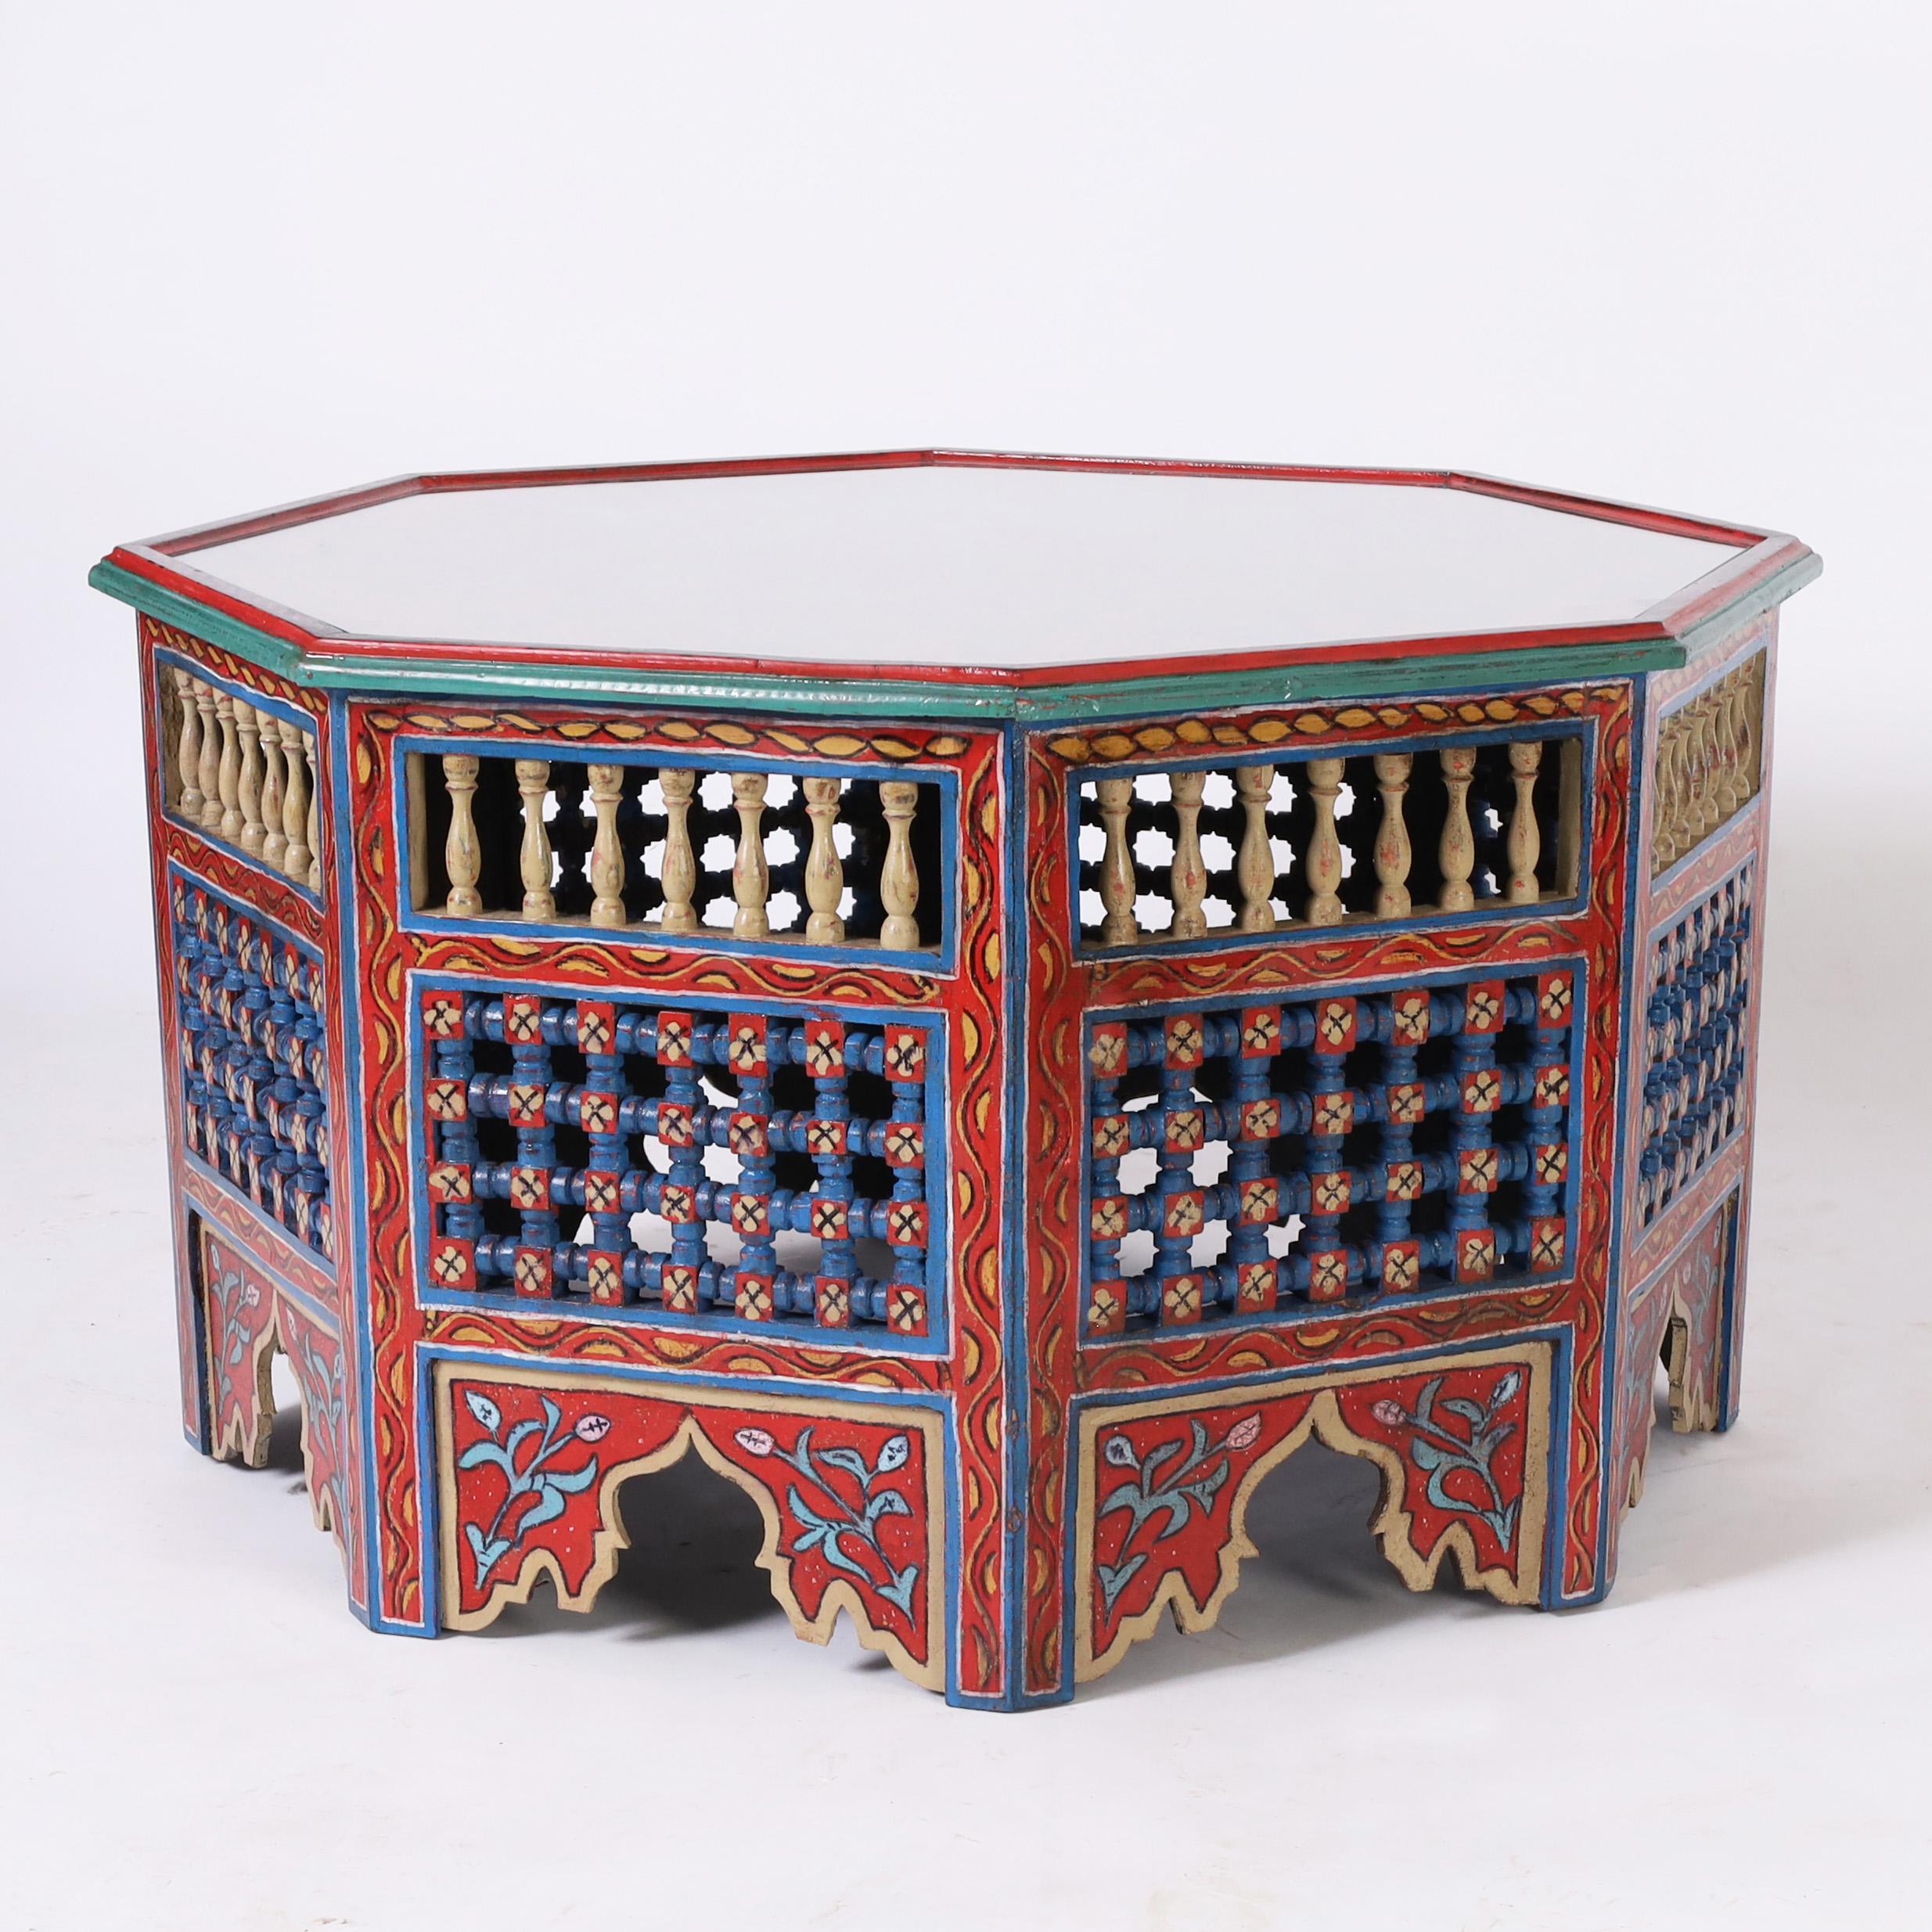 Remarquable table marocaine ancienne en bois dur indigène de forme octogonale décorée à la main de motifs floraux symboliques aux couleurs chaudes caractéristiques de la Méditerranée. La base présente des balustrades tournées, des frettes ouvertes